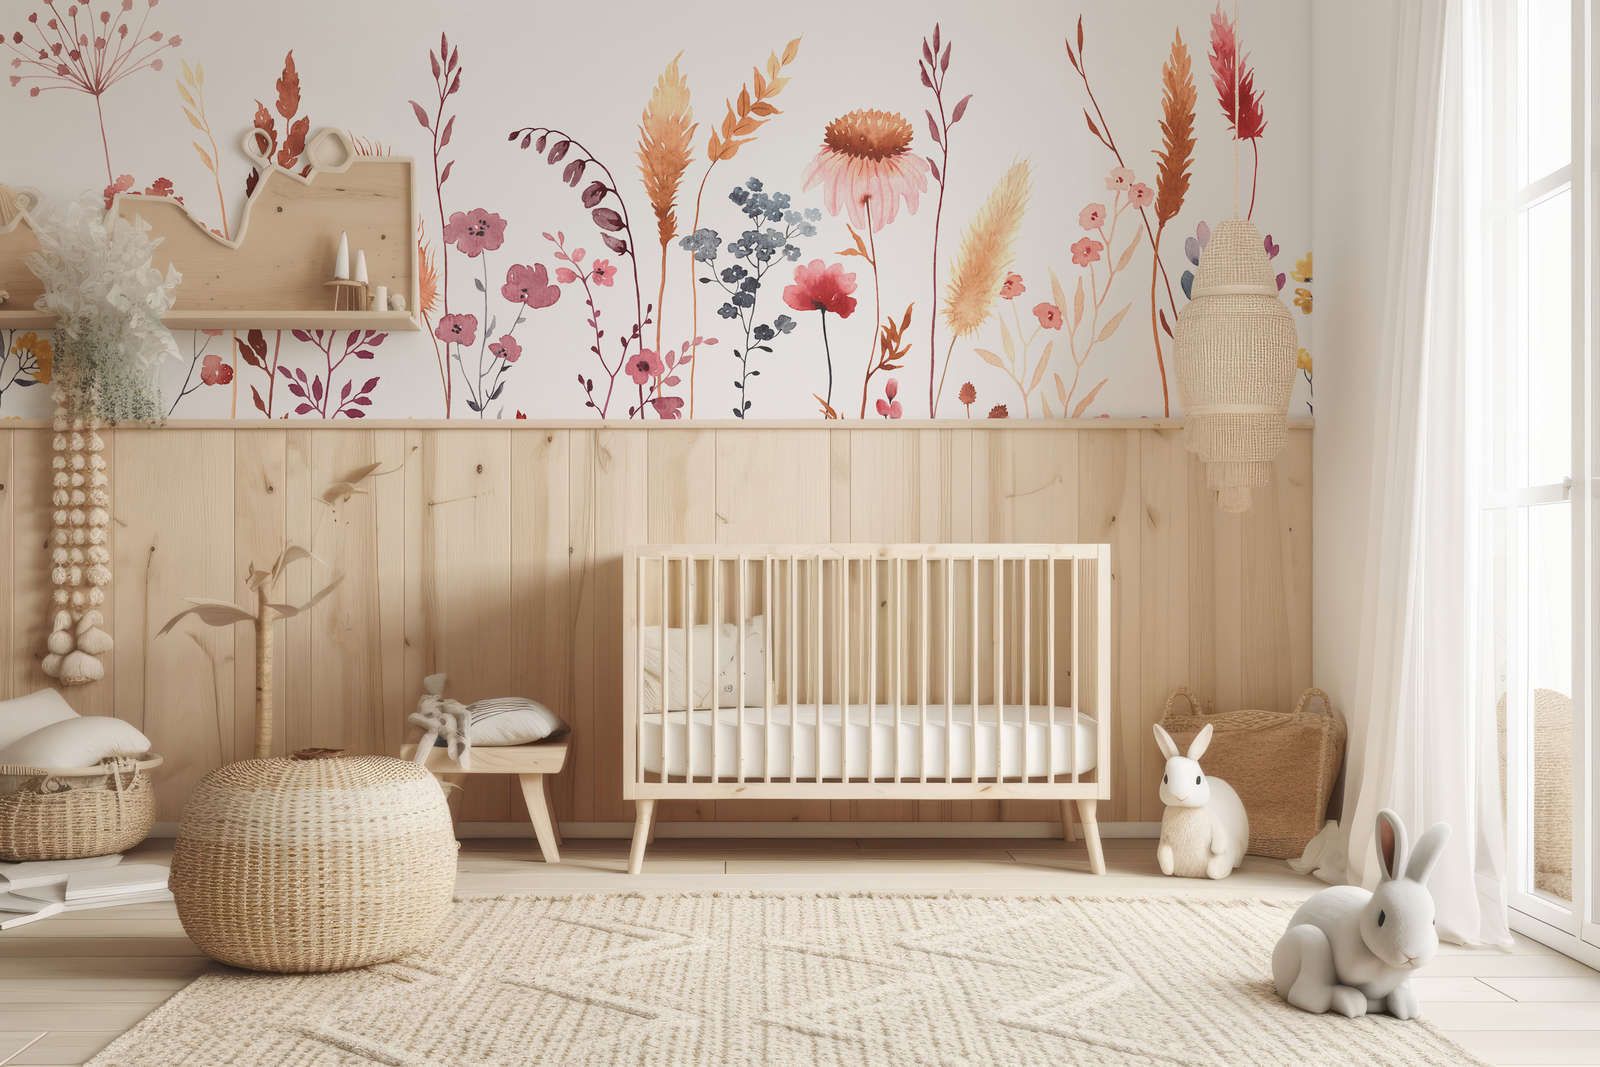             Papel pintado fotográfico para habitación infantil con hojas y hierbas - Material sin tejer liso y ligeramente brillante
        